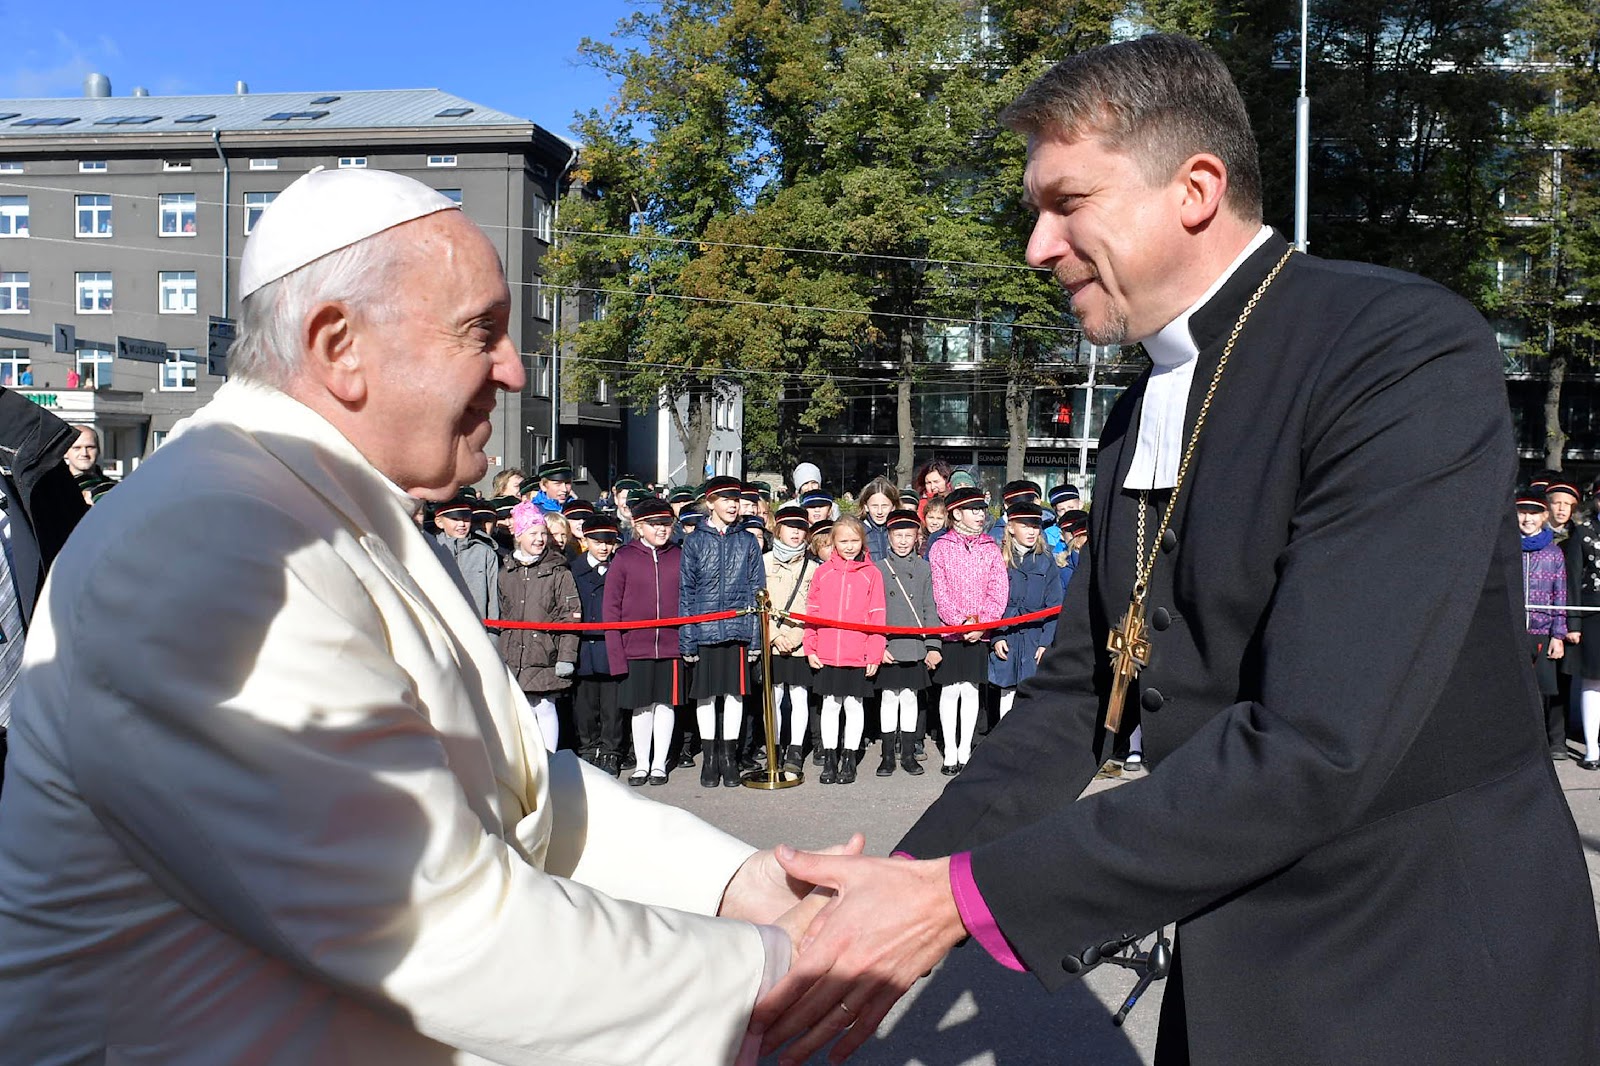 PHỎNG VẤN TẠI TALLINN: Đức Tổng Giám mục Tin lành của Estonia: “Cuộc thăm viếng của Đức Giáo hoàng sẽ là sự thể hiện tình yêu thương cho nhau”